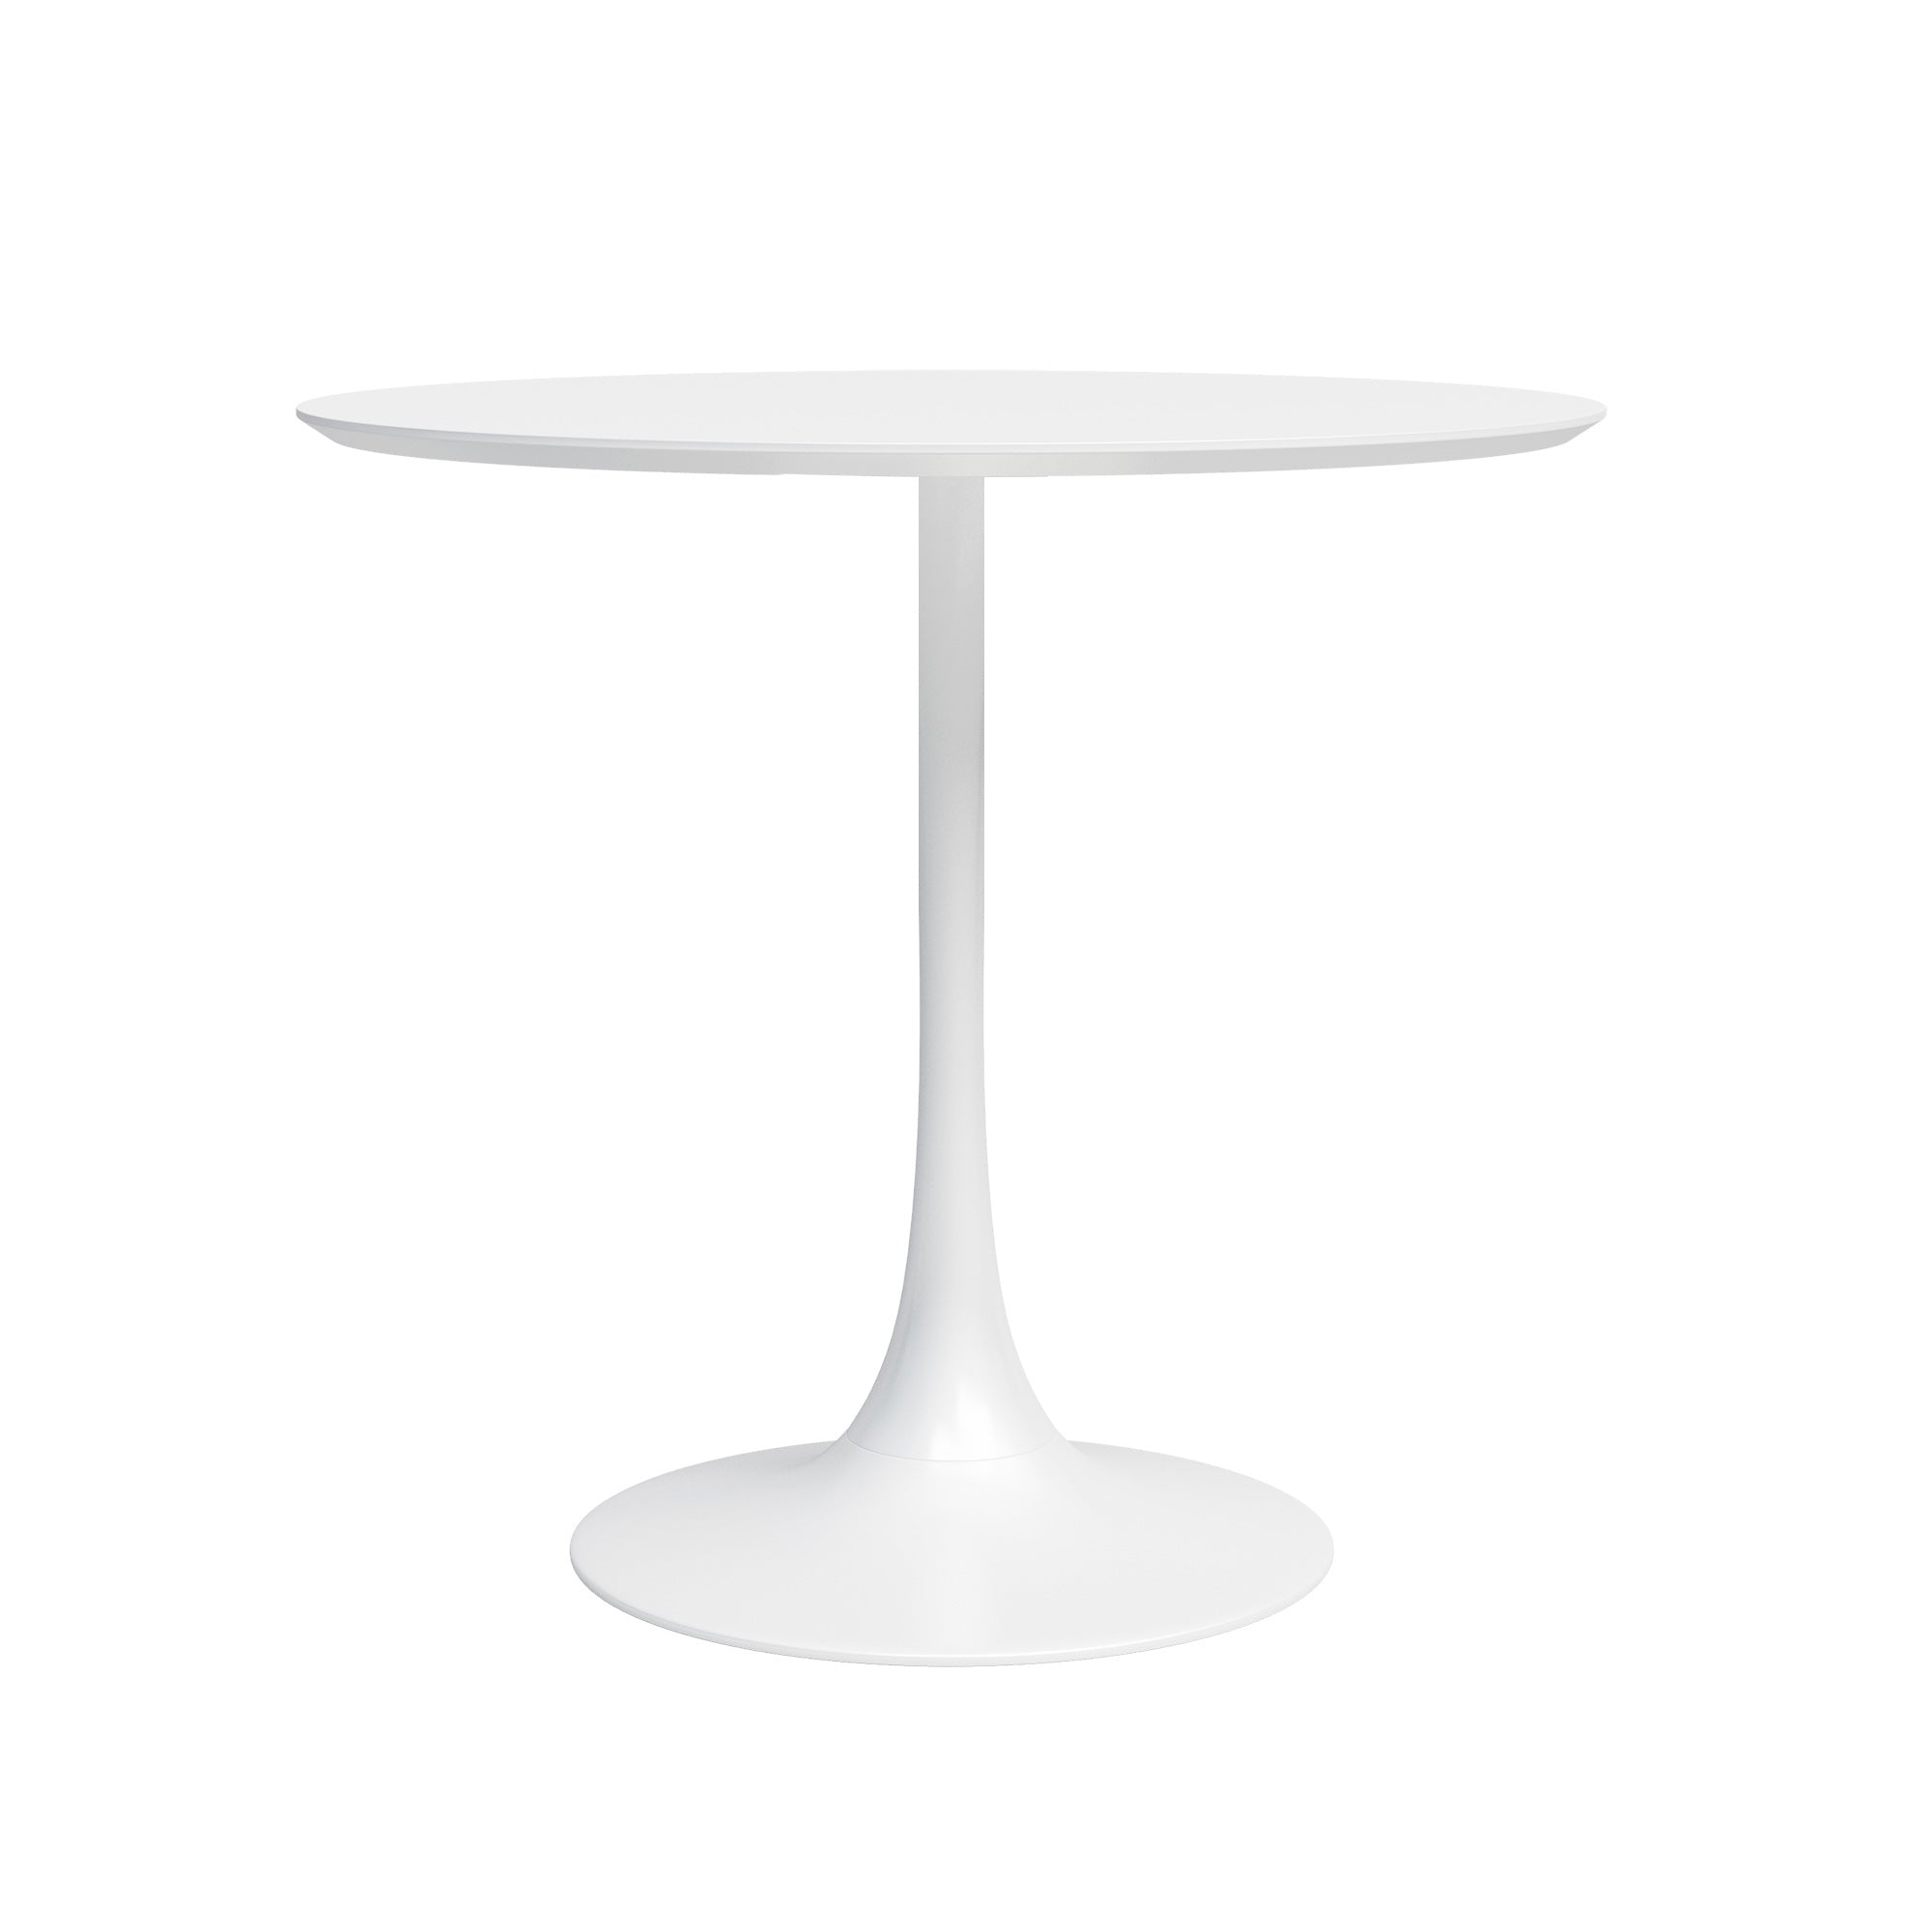 Kurv™ Series Cafe Table + Kurv™ Chair - Set of 2